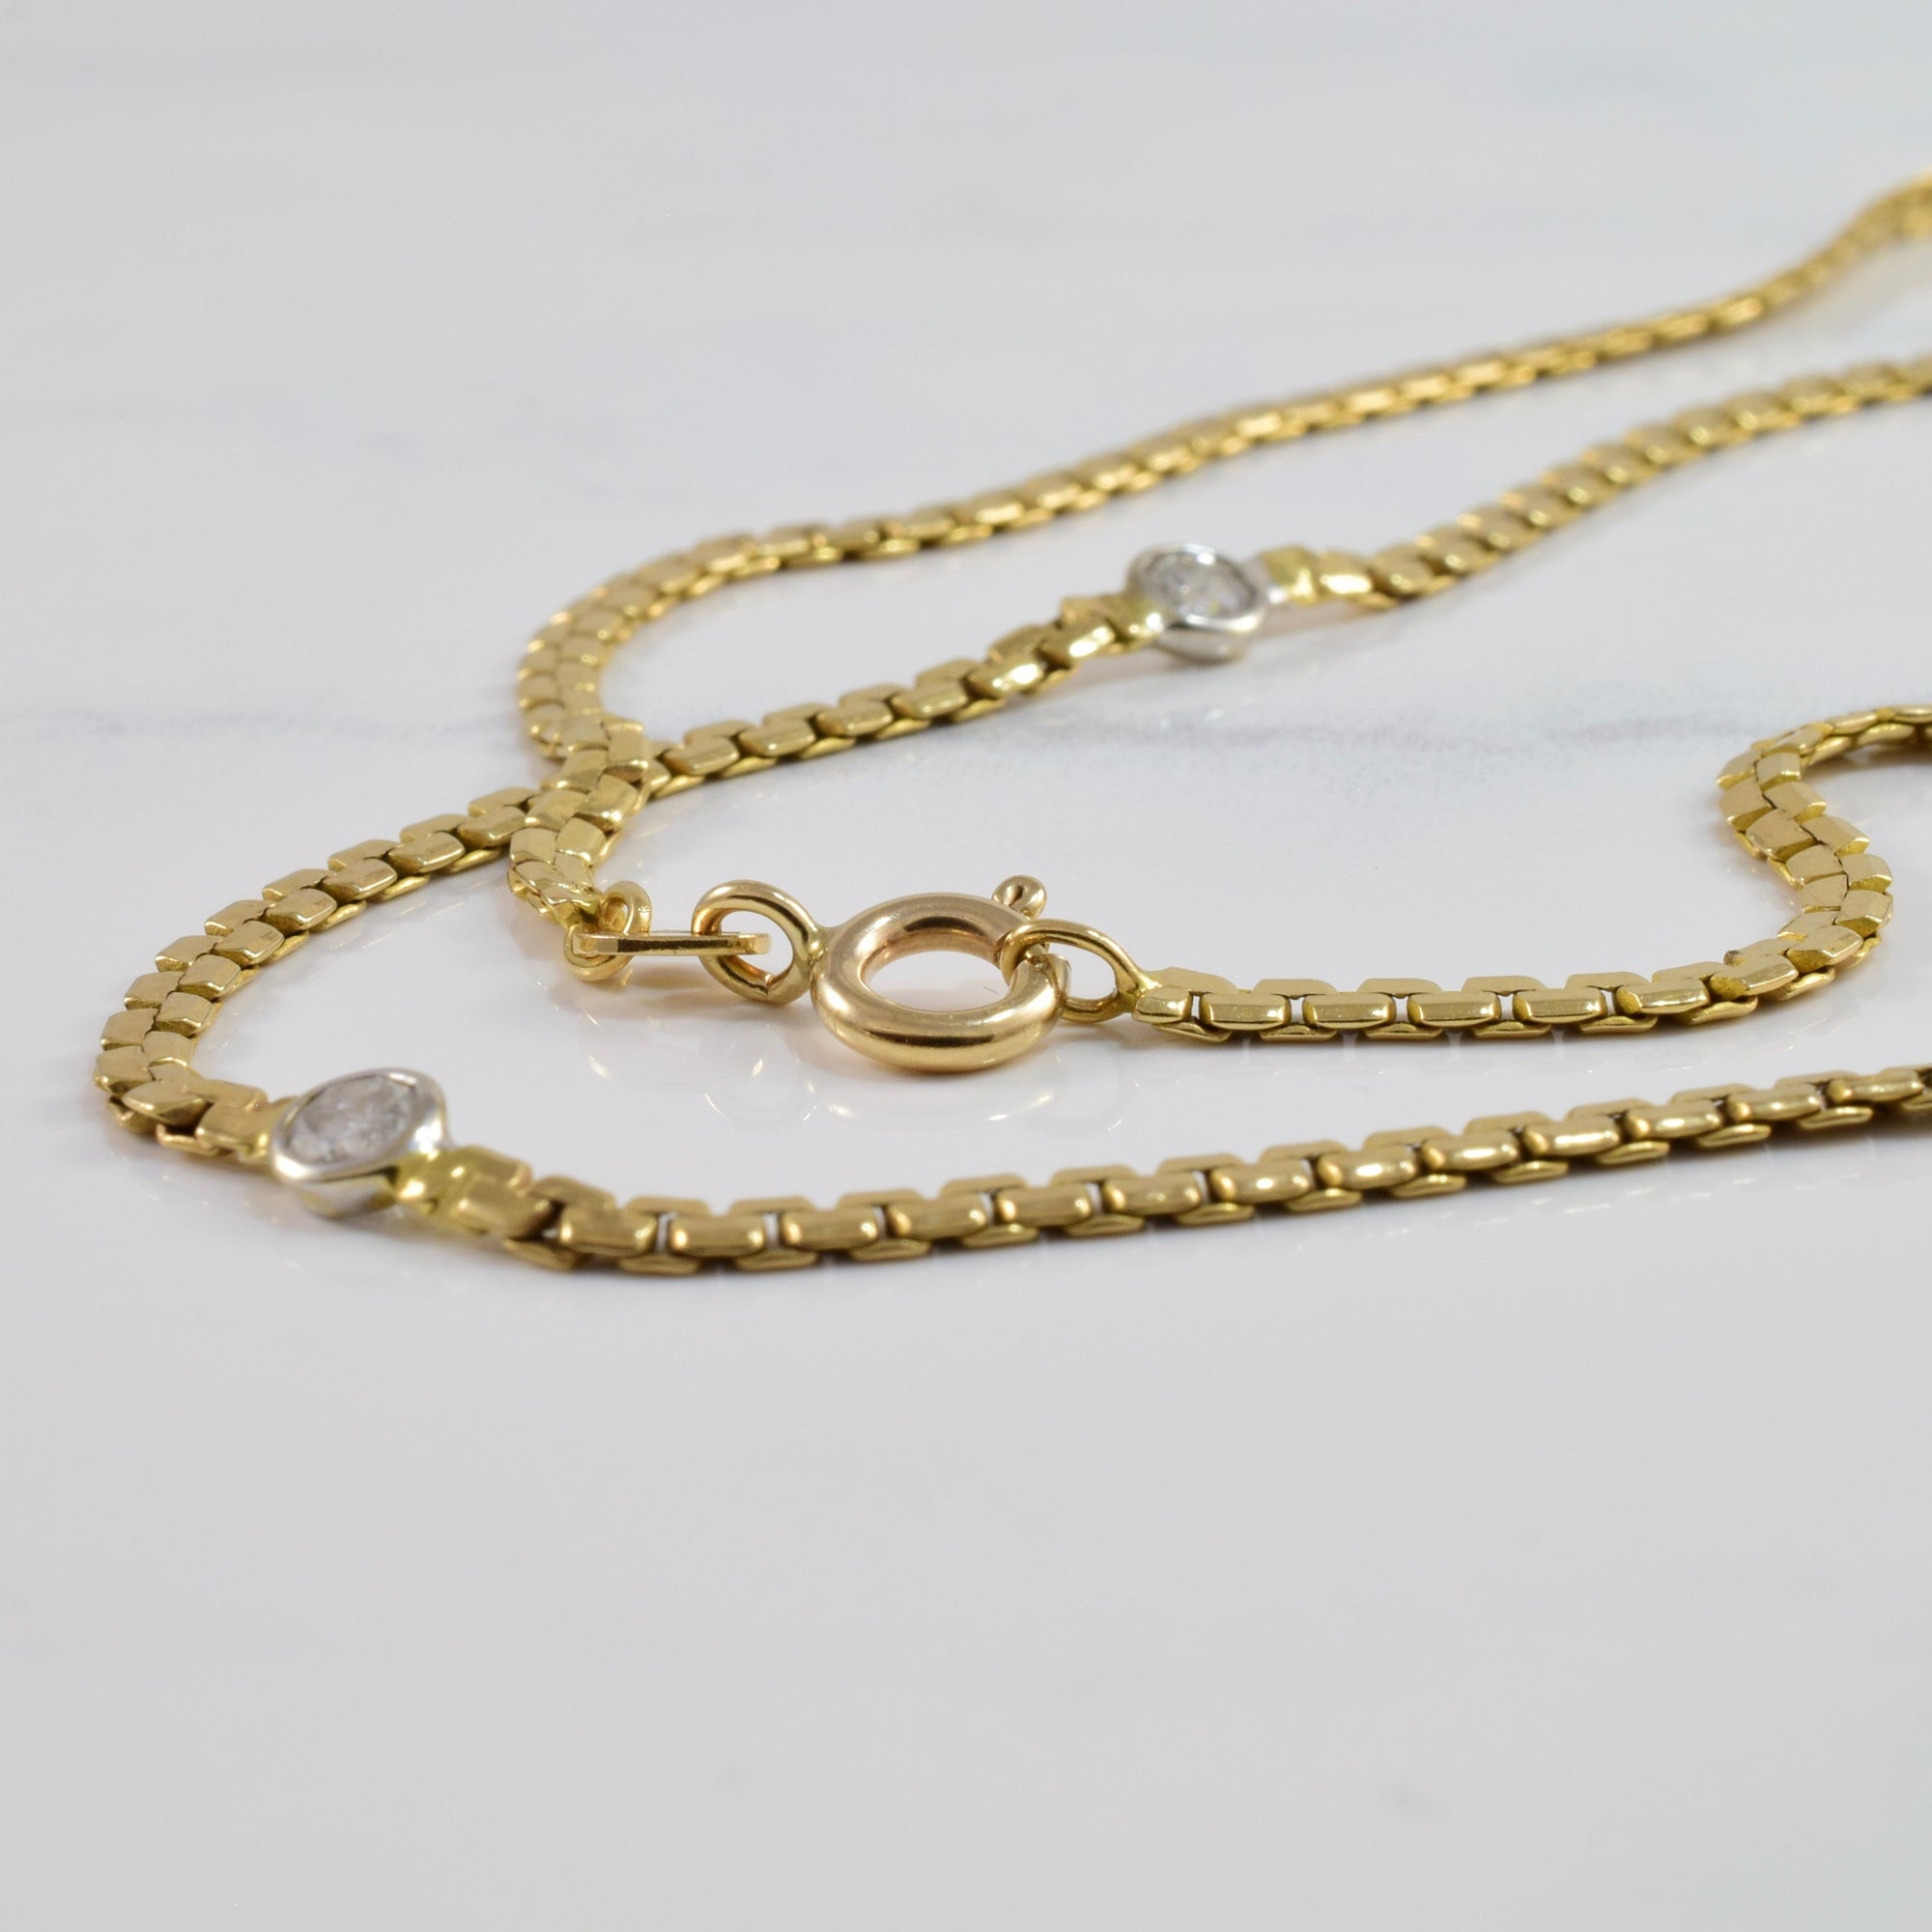 Bezel Set Diamond Necklace | 1.10 ctw SZ 20